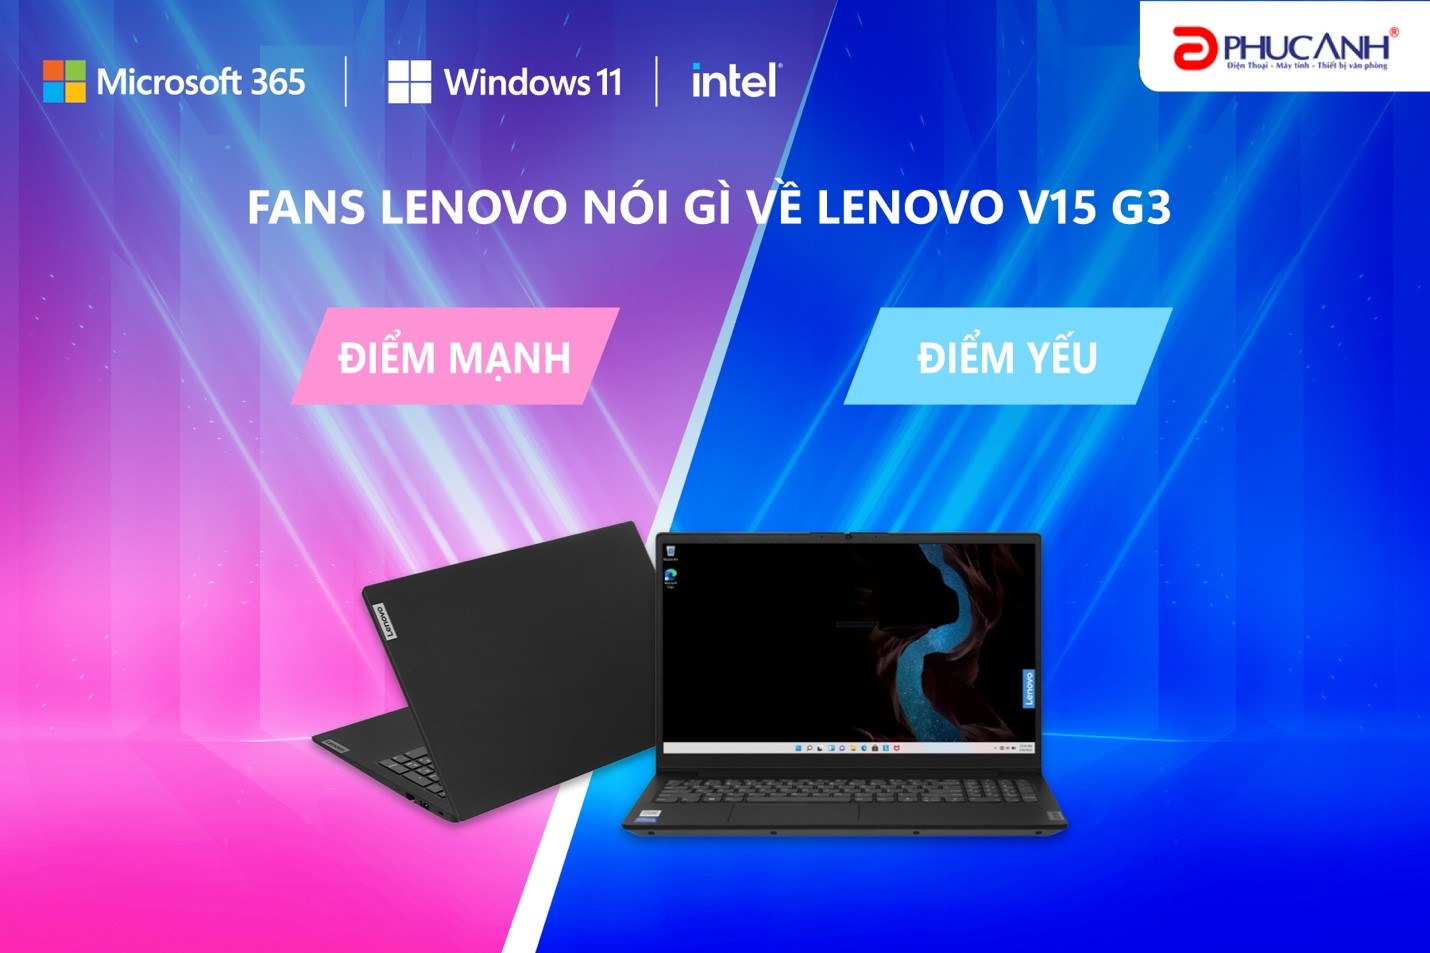 Fans Lenovo nói gì về Lenovo V15 G3 IAP I5 1235U, chiếc laptop văn phòng đáng mua trong phân khúc dưới 15 triệu đồng?